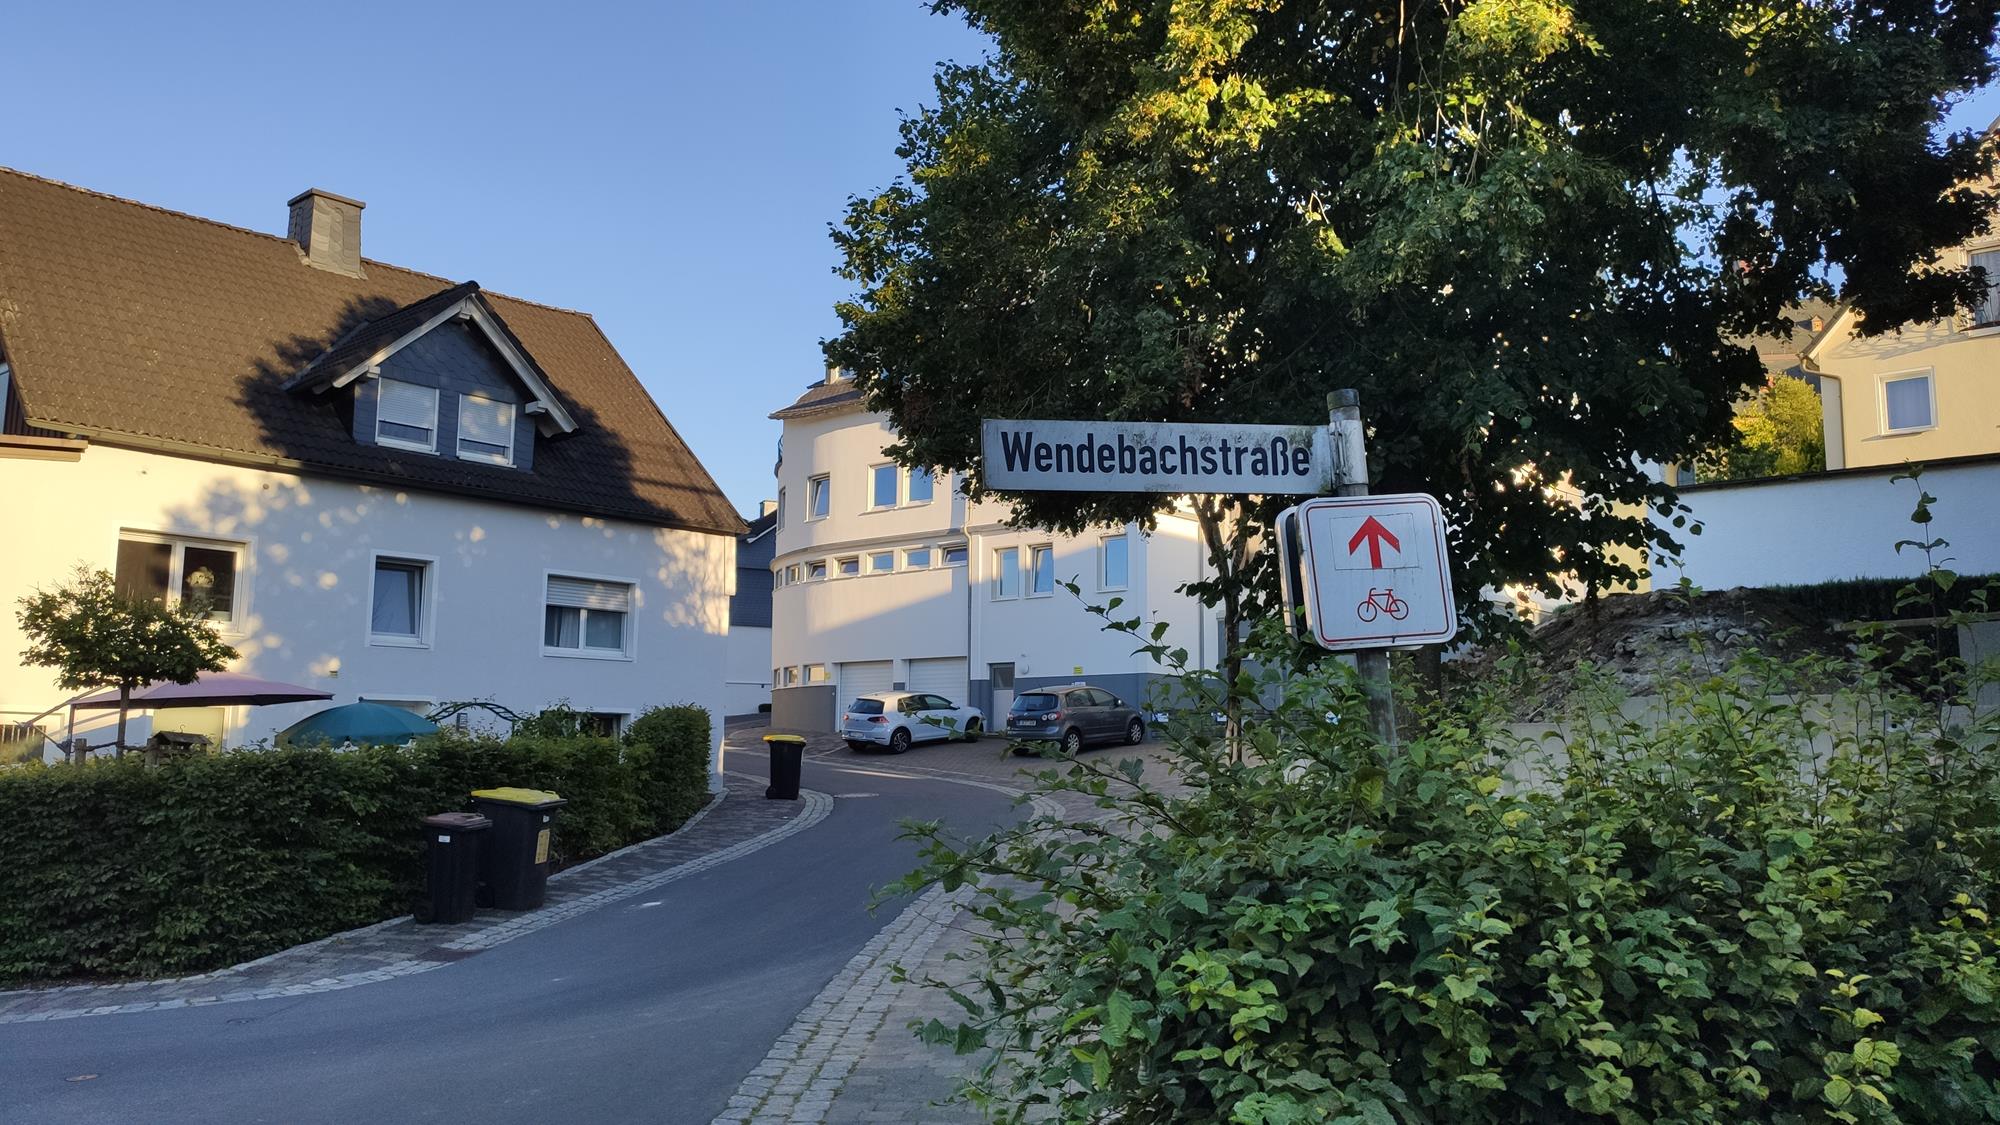 Antrag „Wendebachstraße“: Entschärfung der verkehrlichen Situation – Alternativer Standort für die geplante Moschee